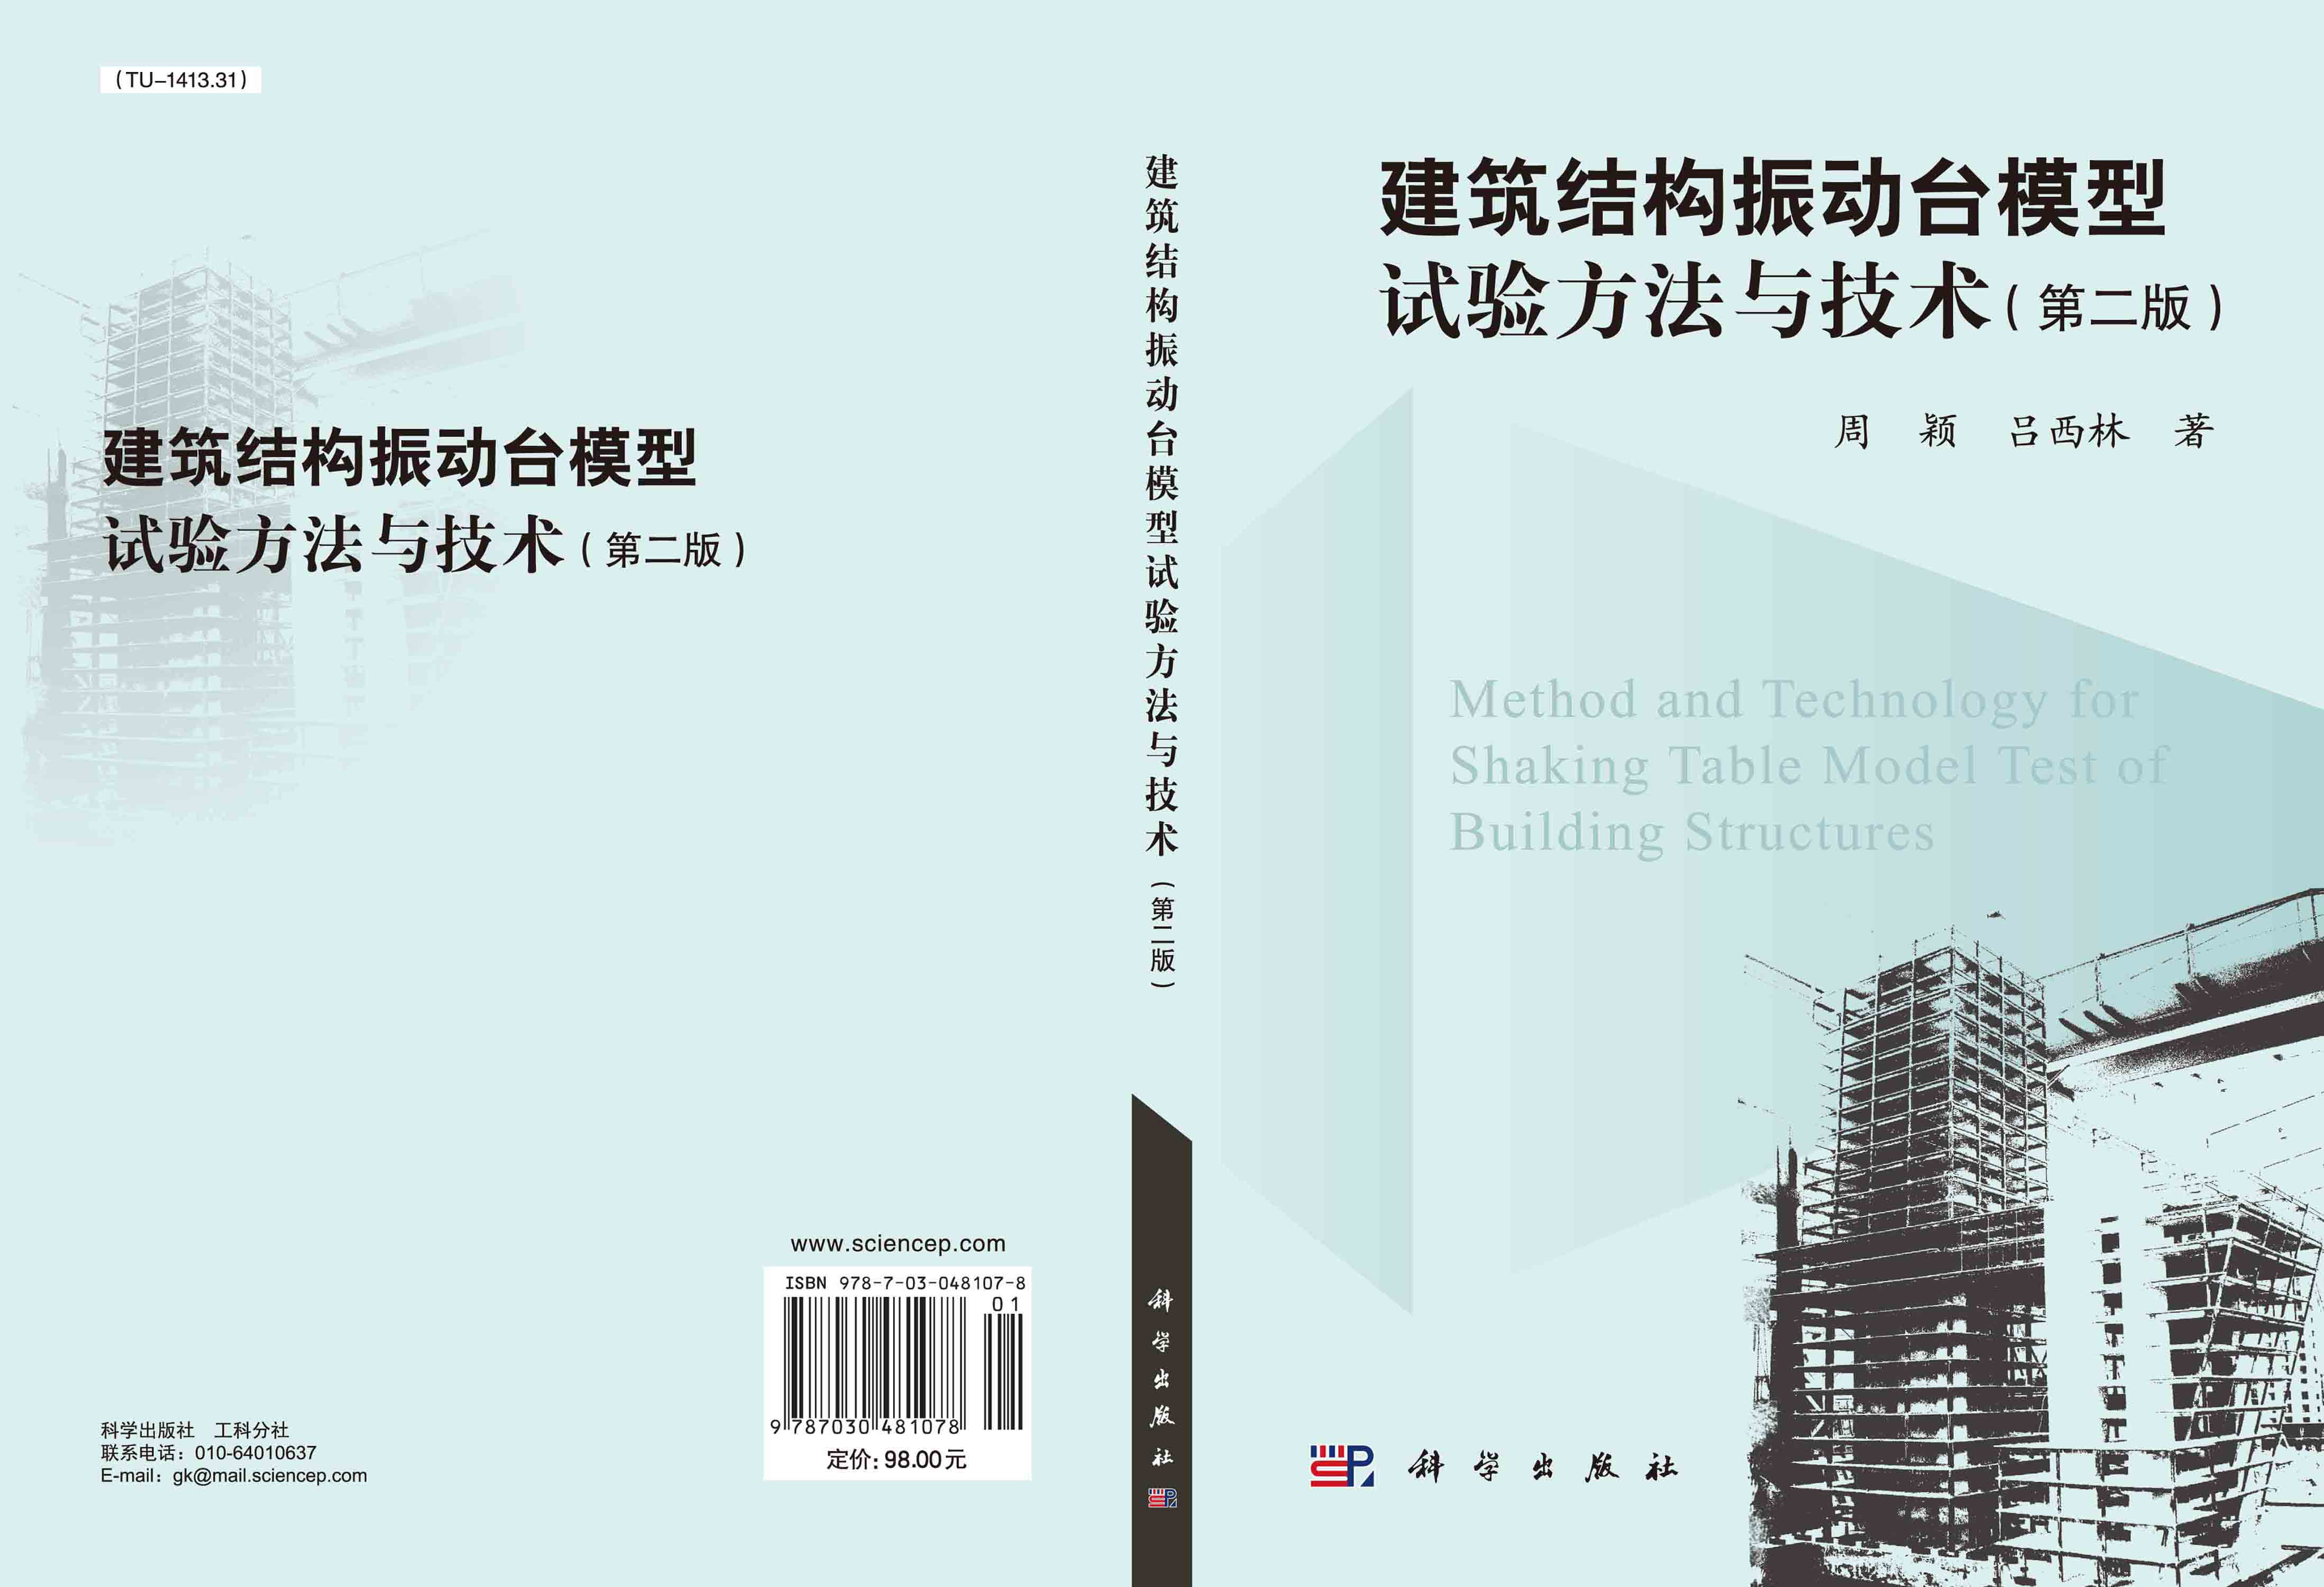 建筑结构振动台模型试验方法与技术（第二版）